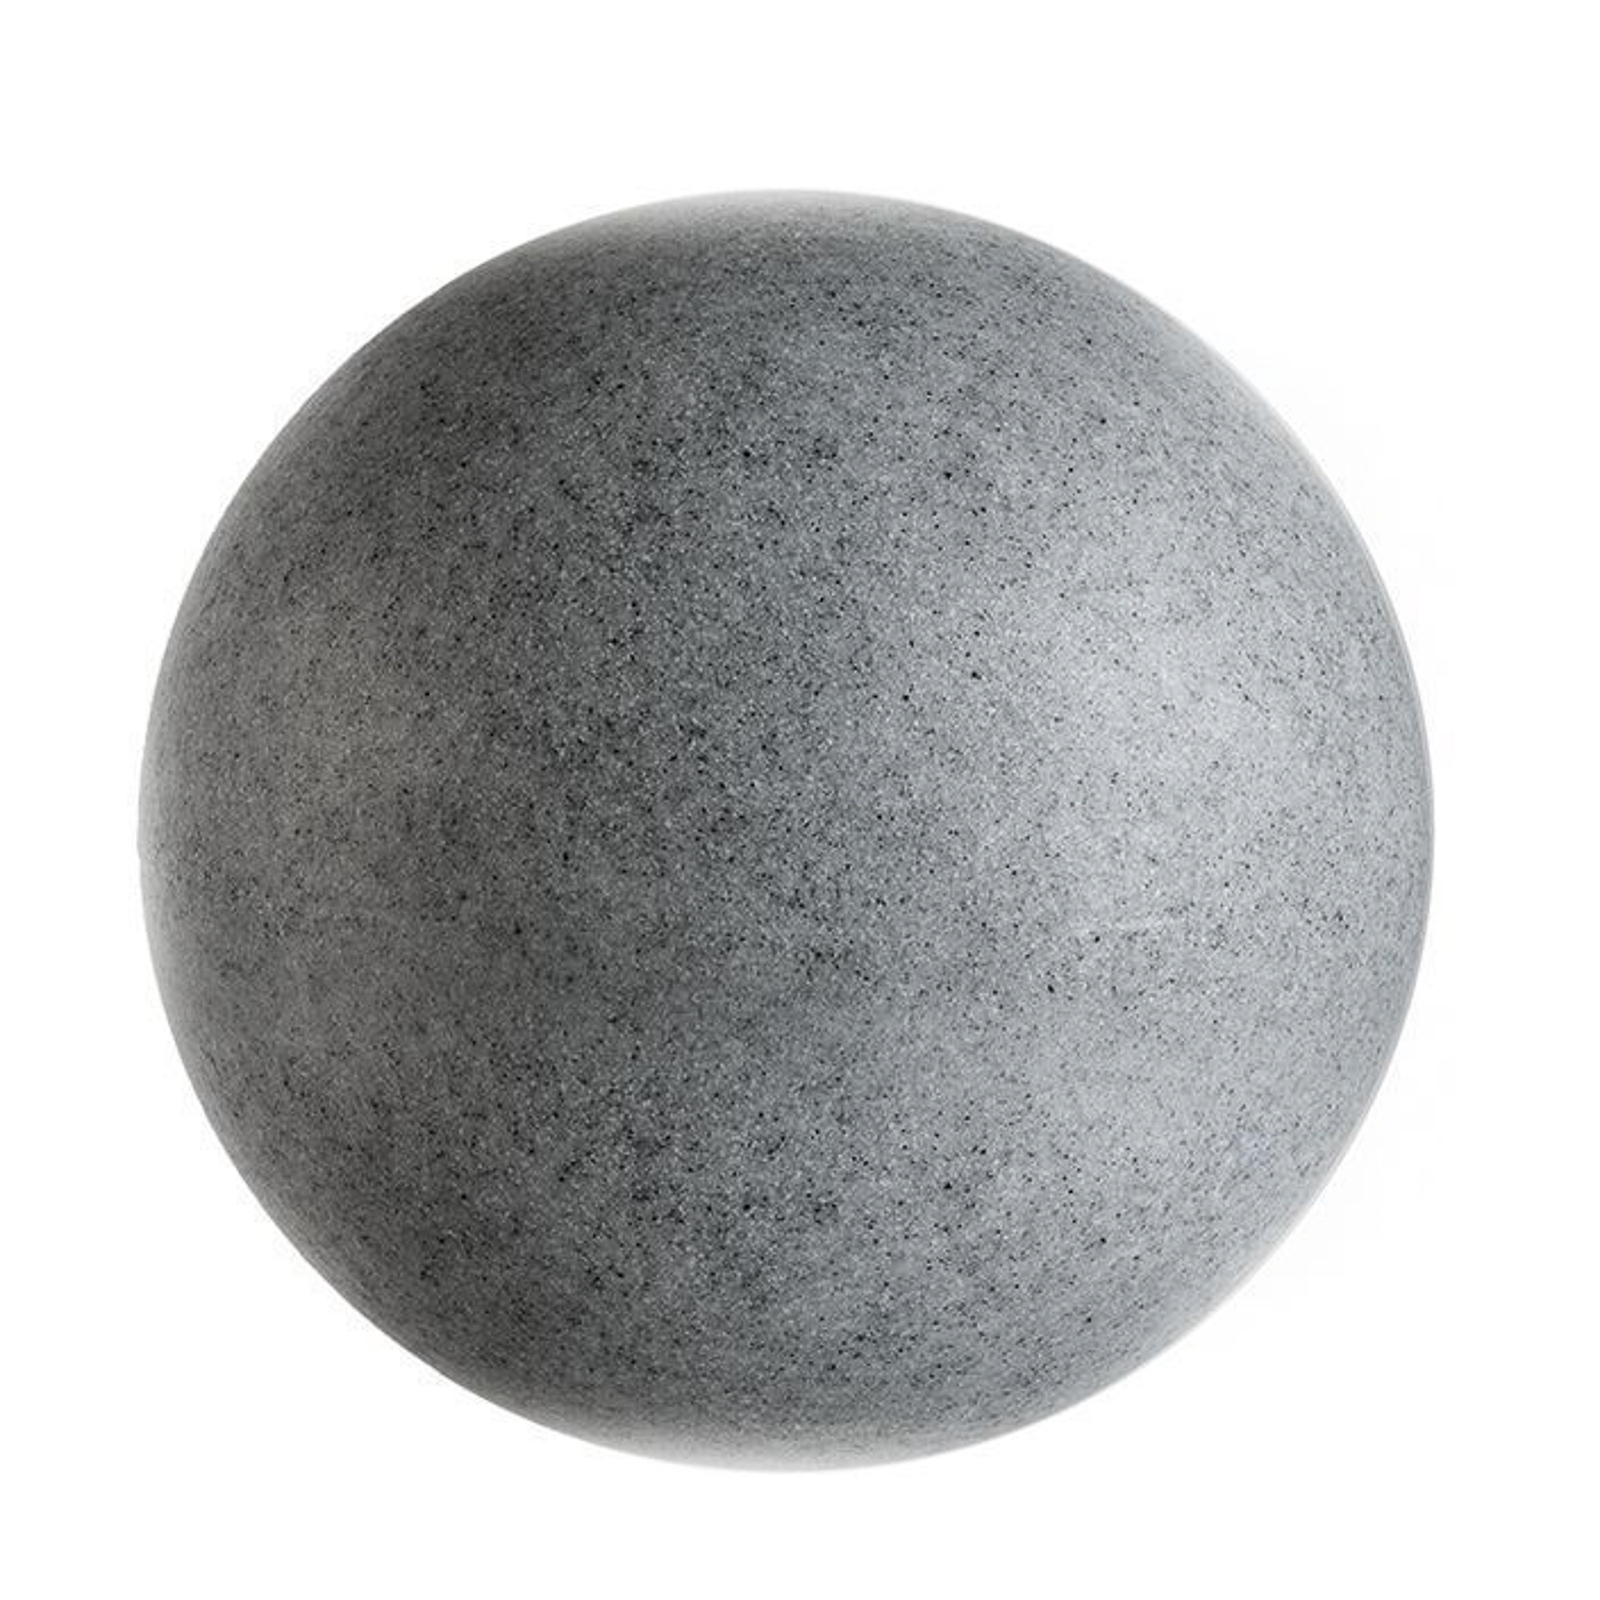 Lâmpada de globo para exterior com espigão, granito, Ø 25cm